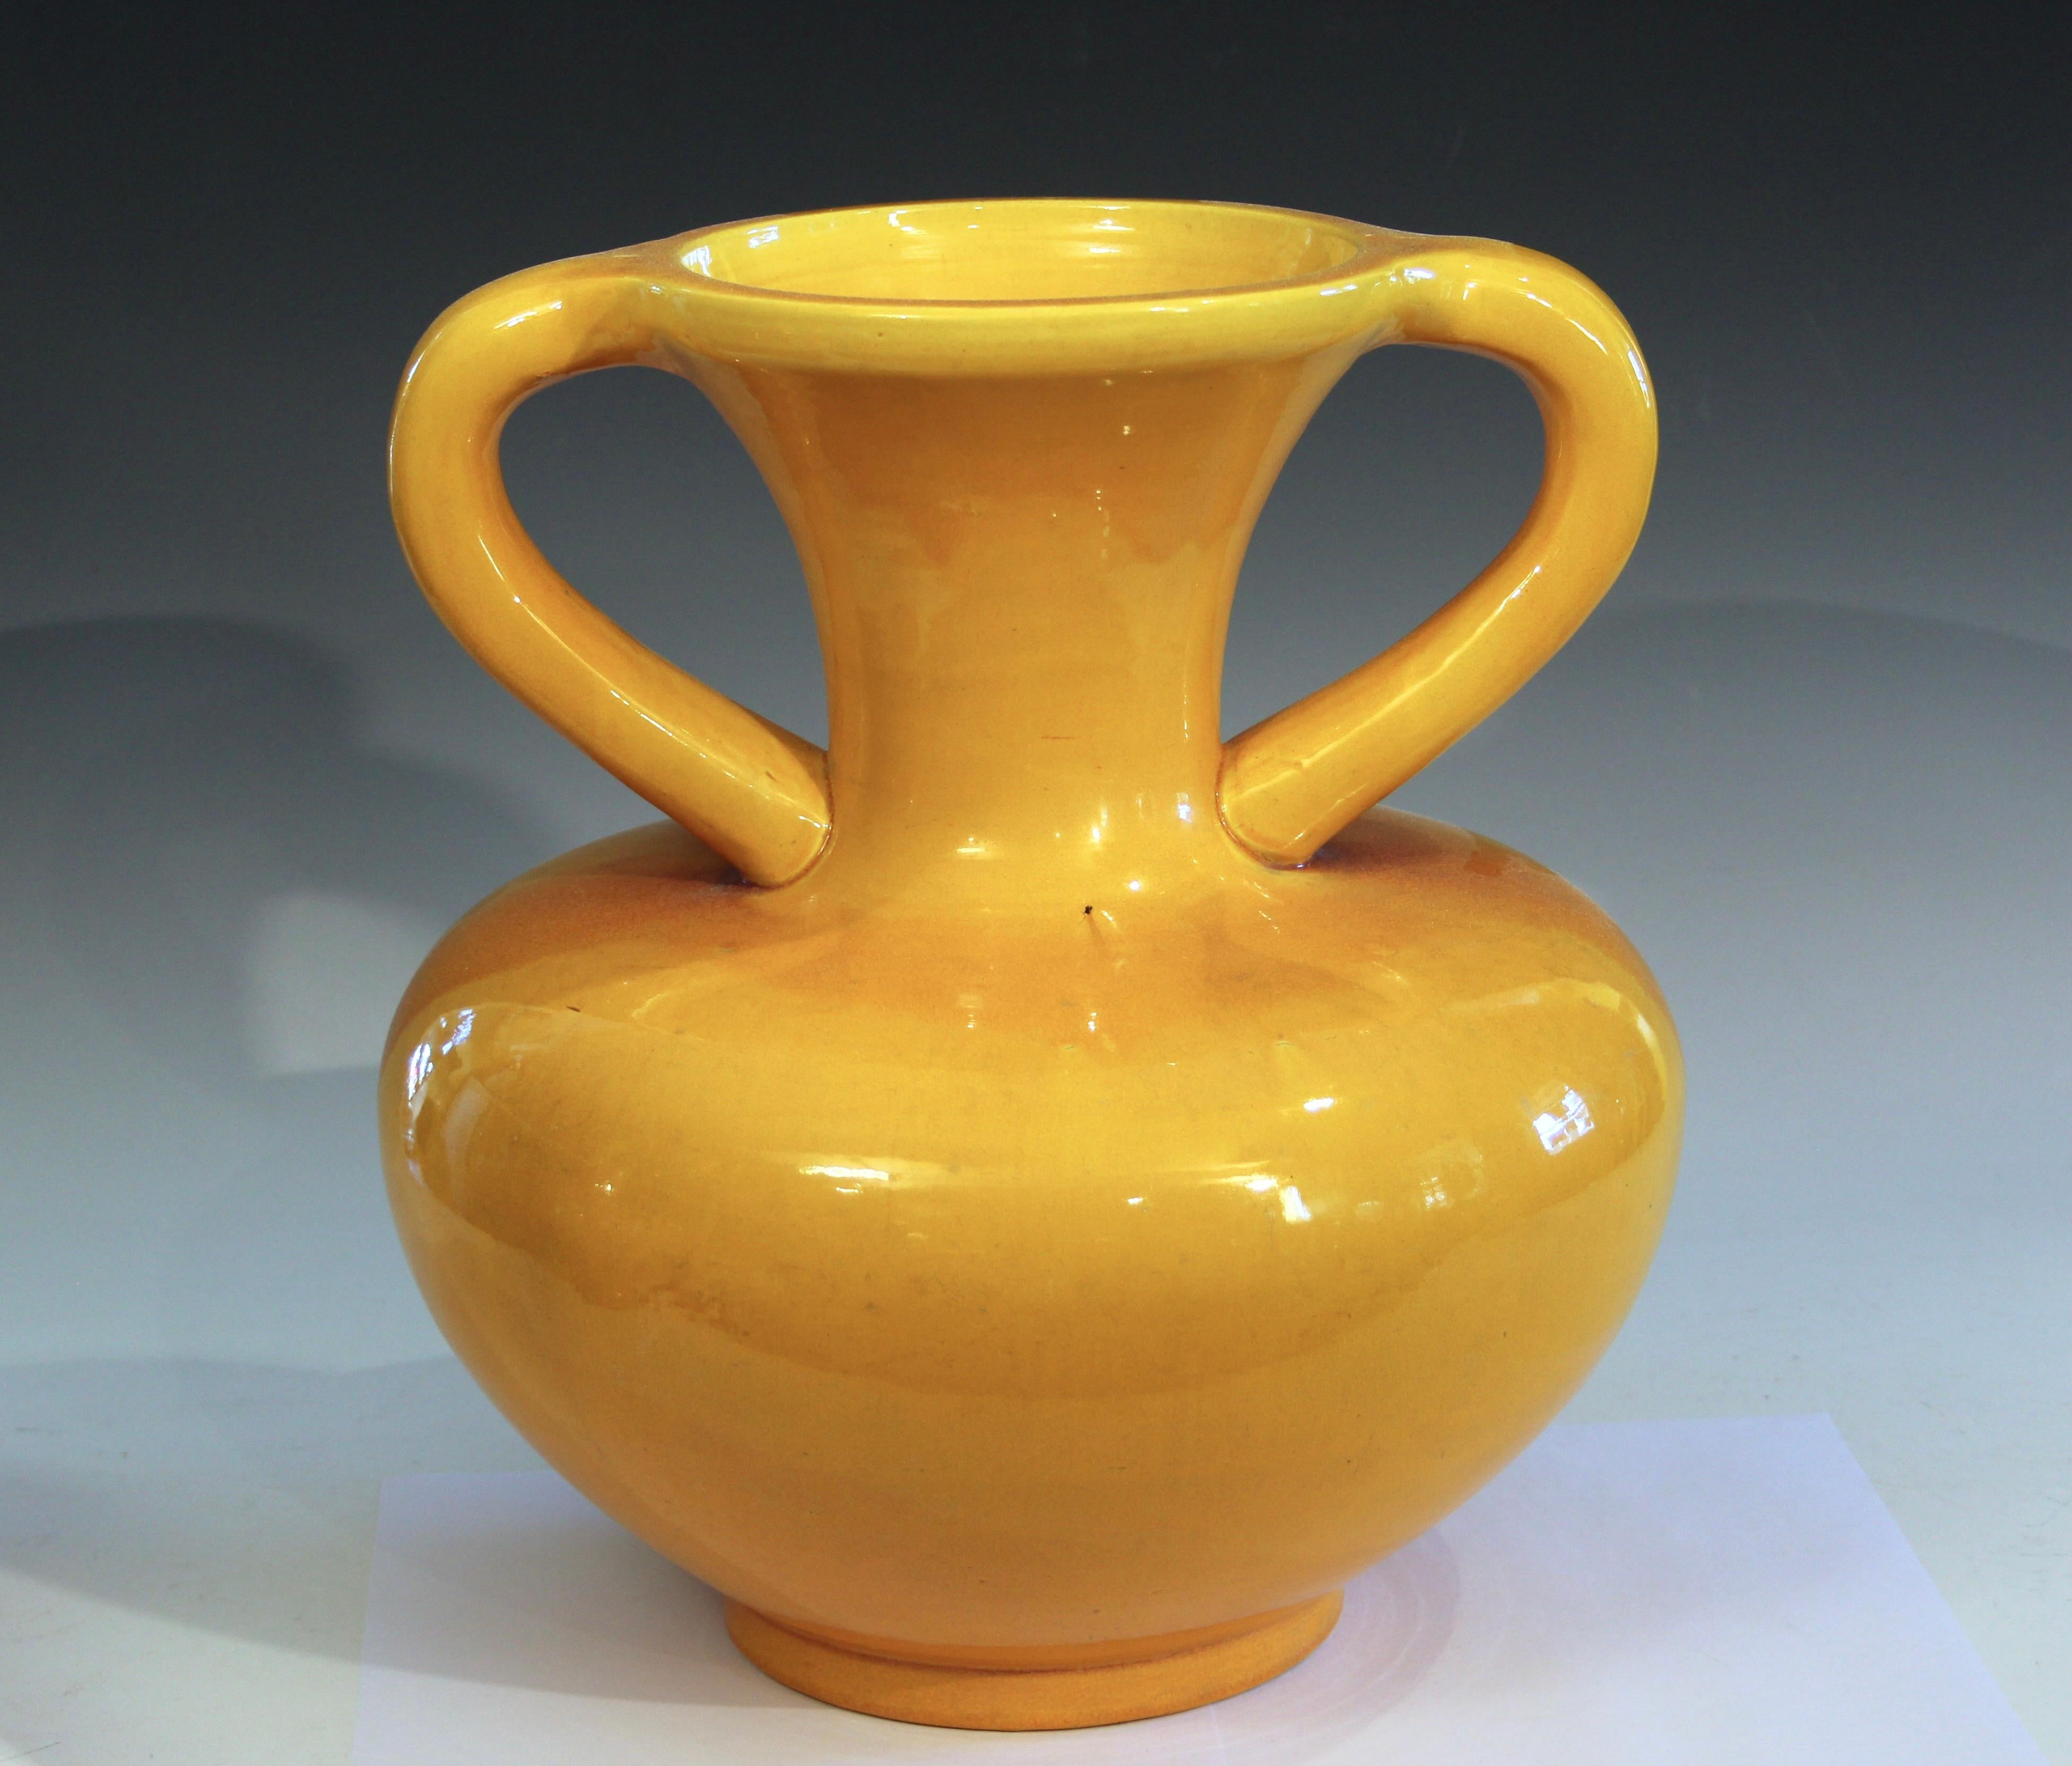 Grand vase Arts and Crafts en poterie d'Awaji en forme de bourse à cordon avec glaçure monochrome jaune d'or, vers 1920. 14